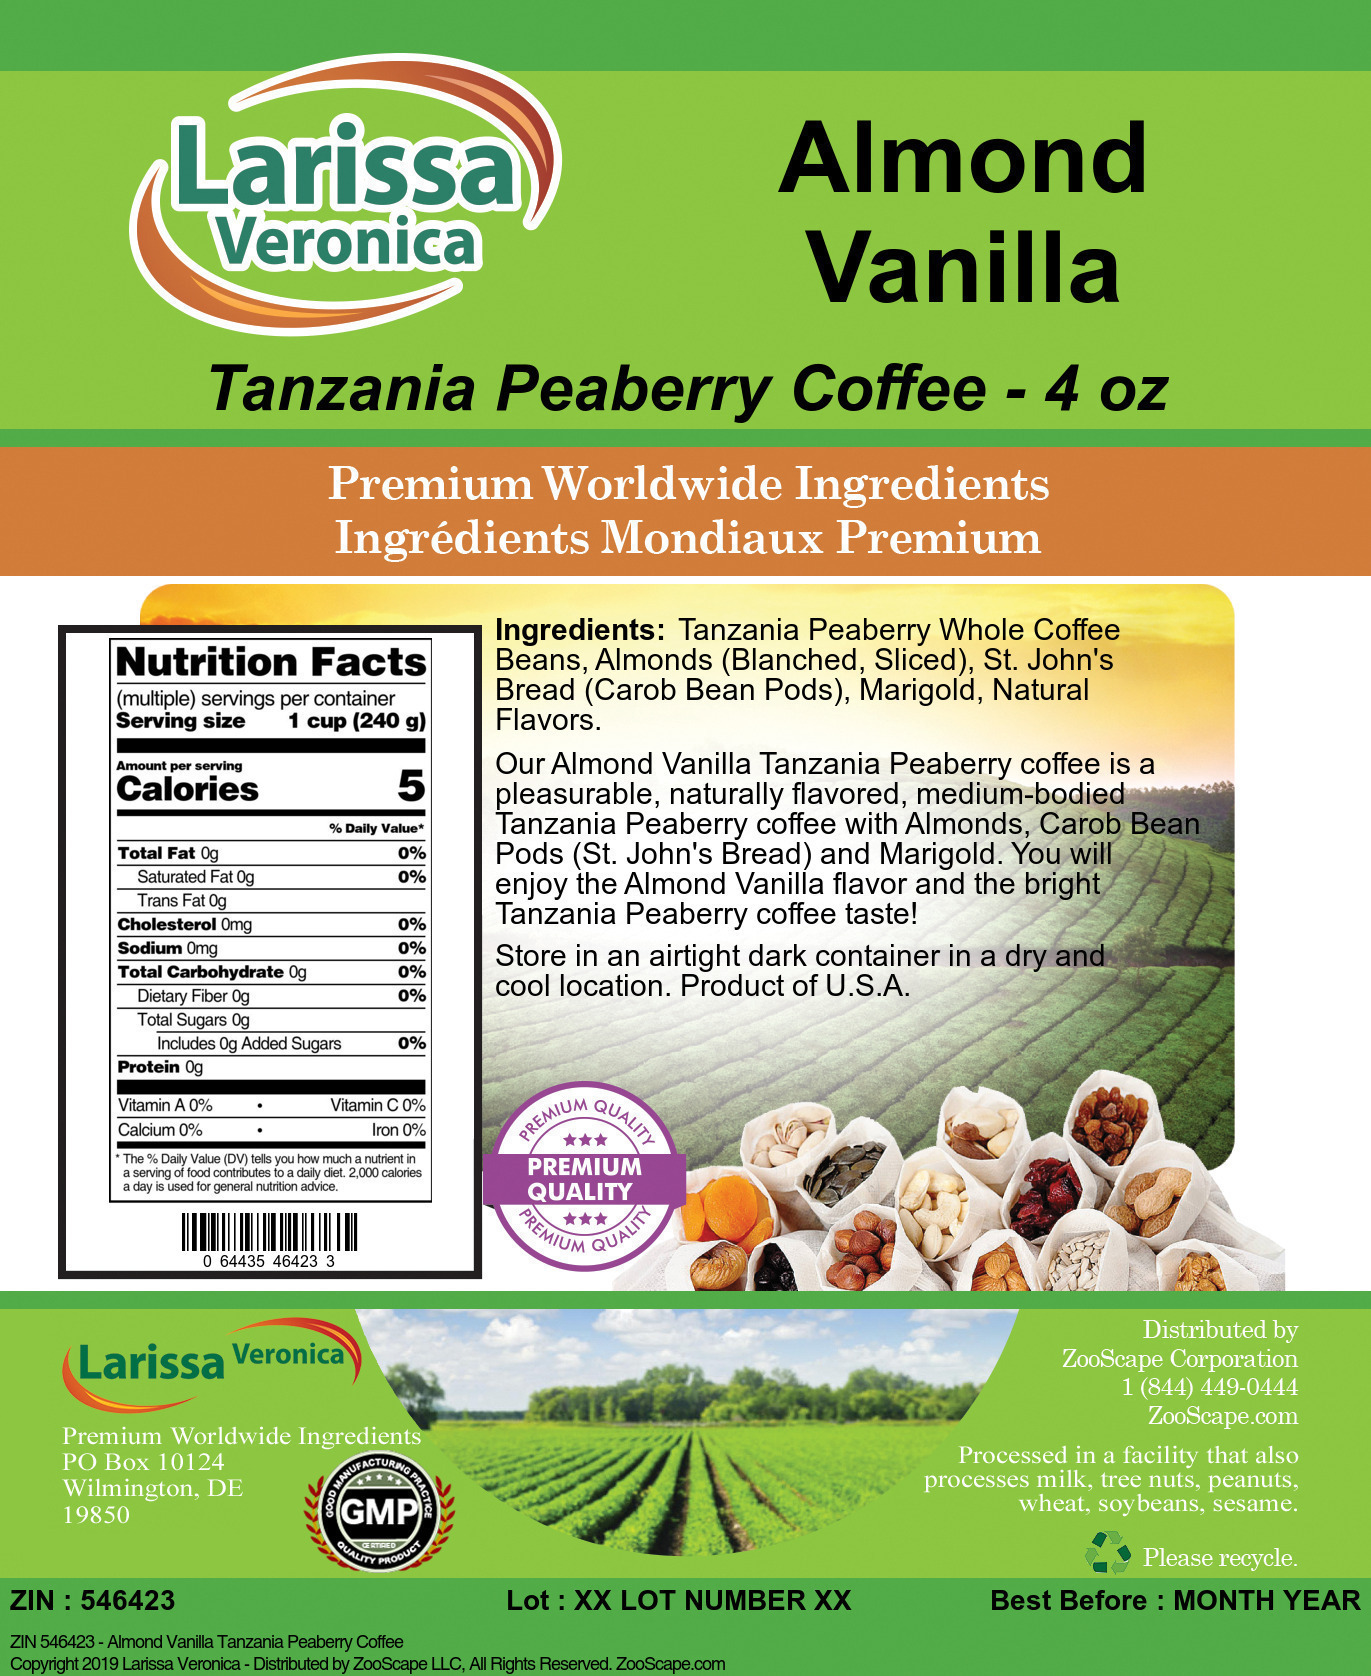 Almond Vanilla Tanzania Peaberry Coffee - Label